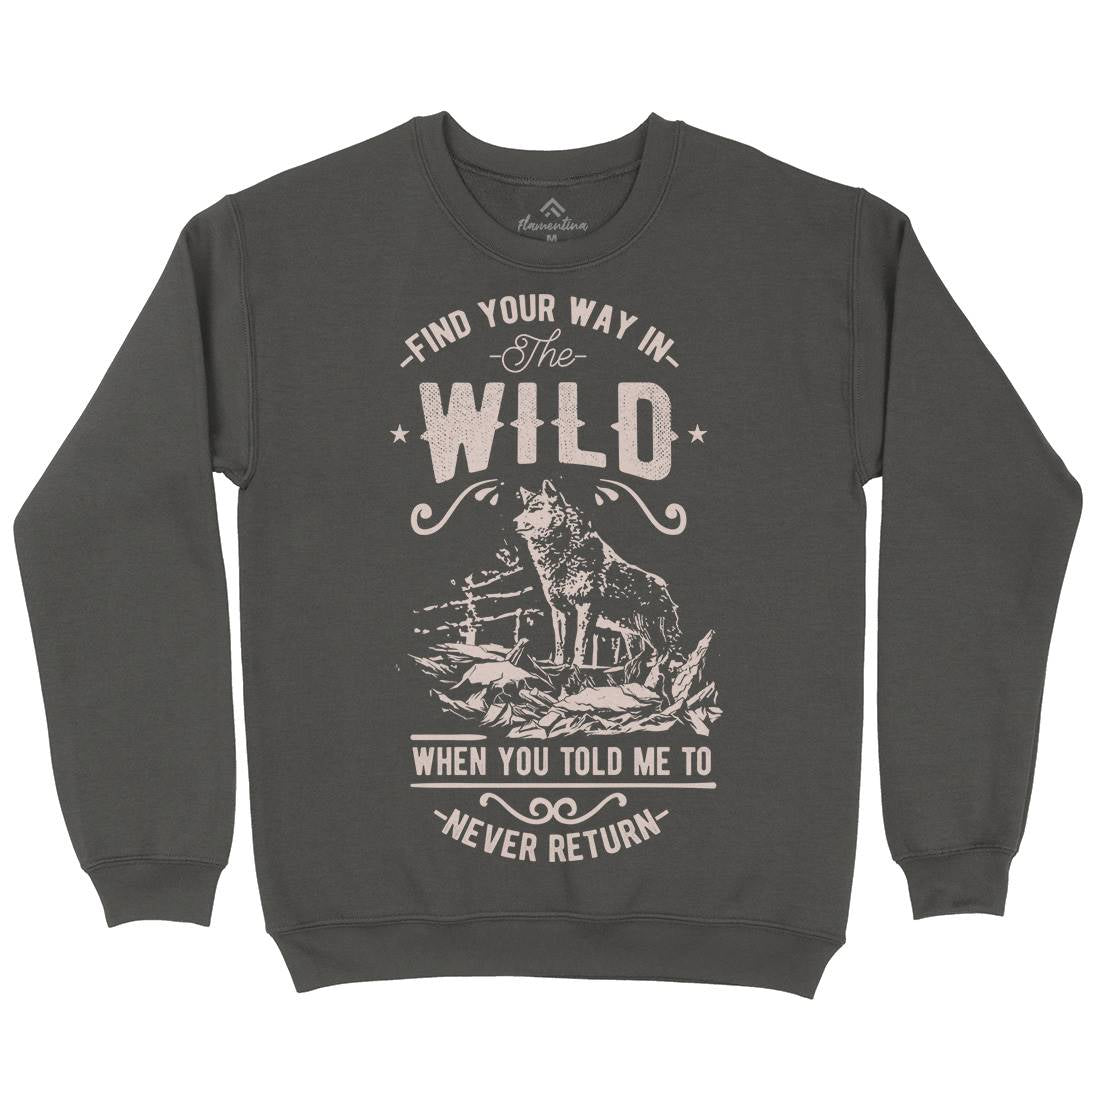 Find Your Way In The Wild Mens Crew Neck Sweatshirt Nature C932